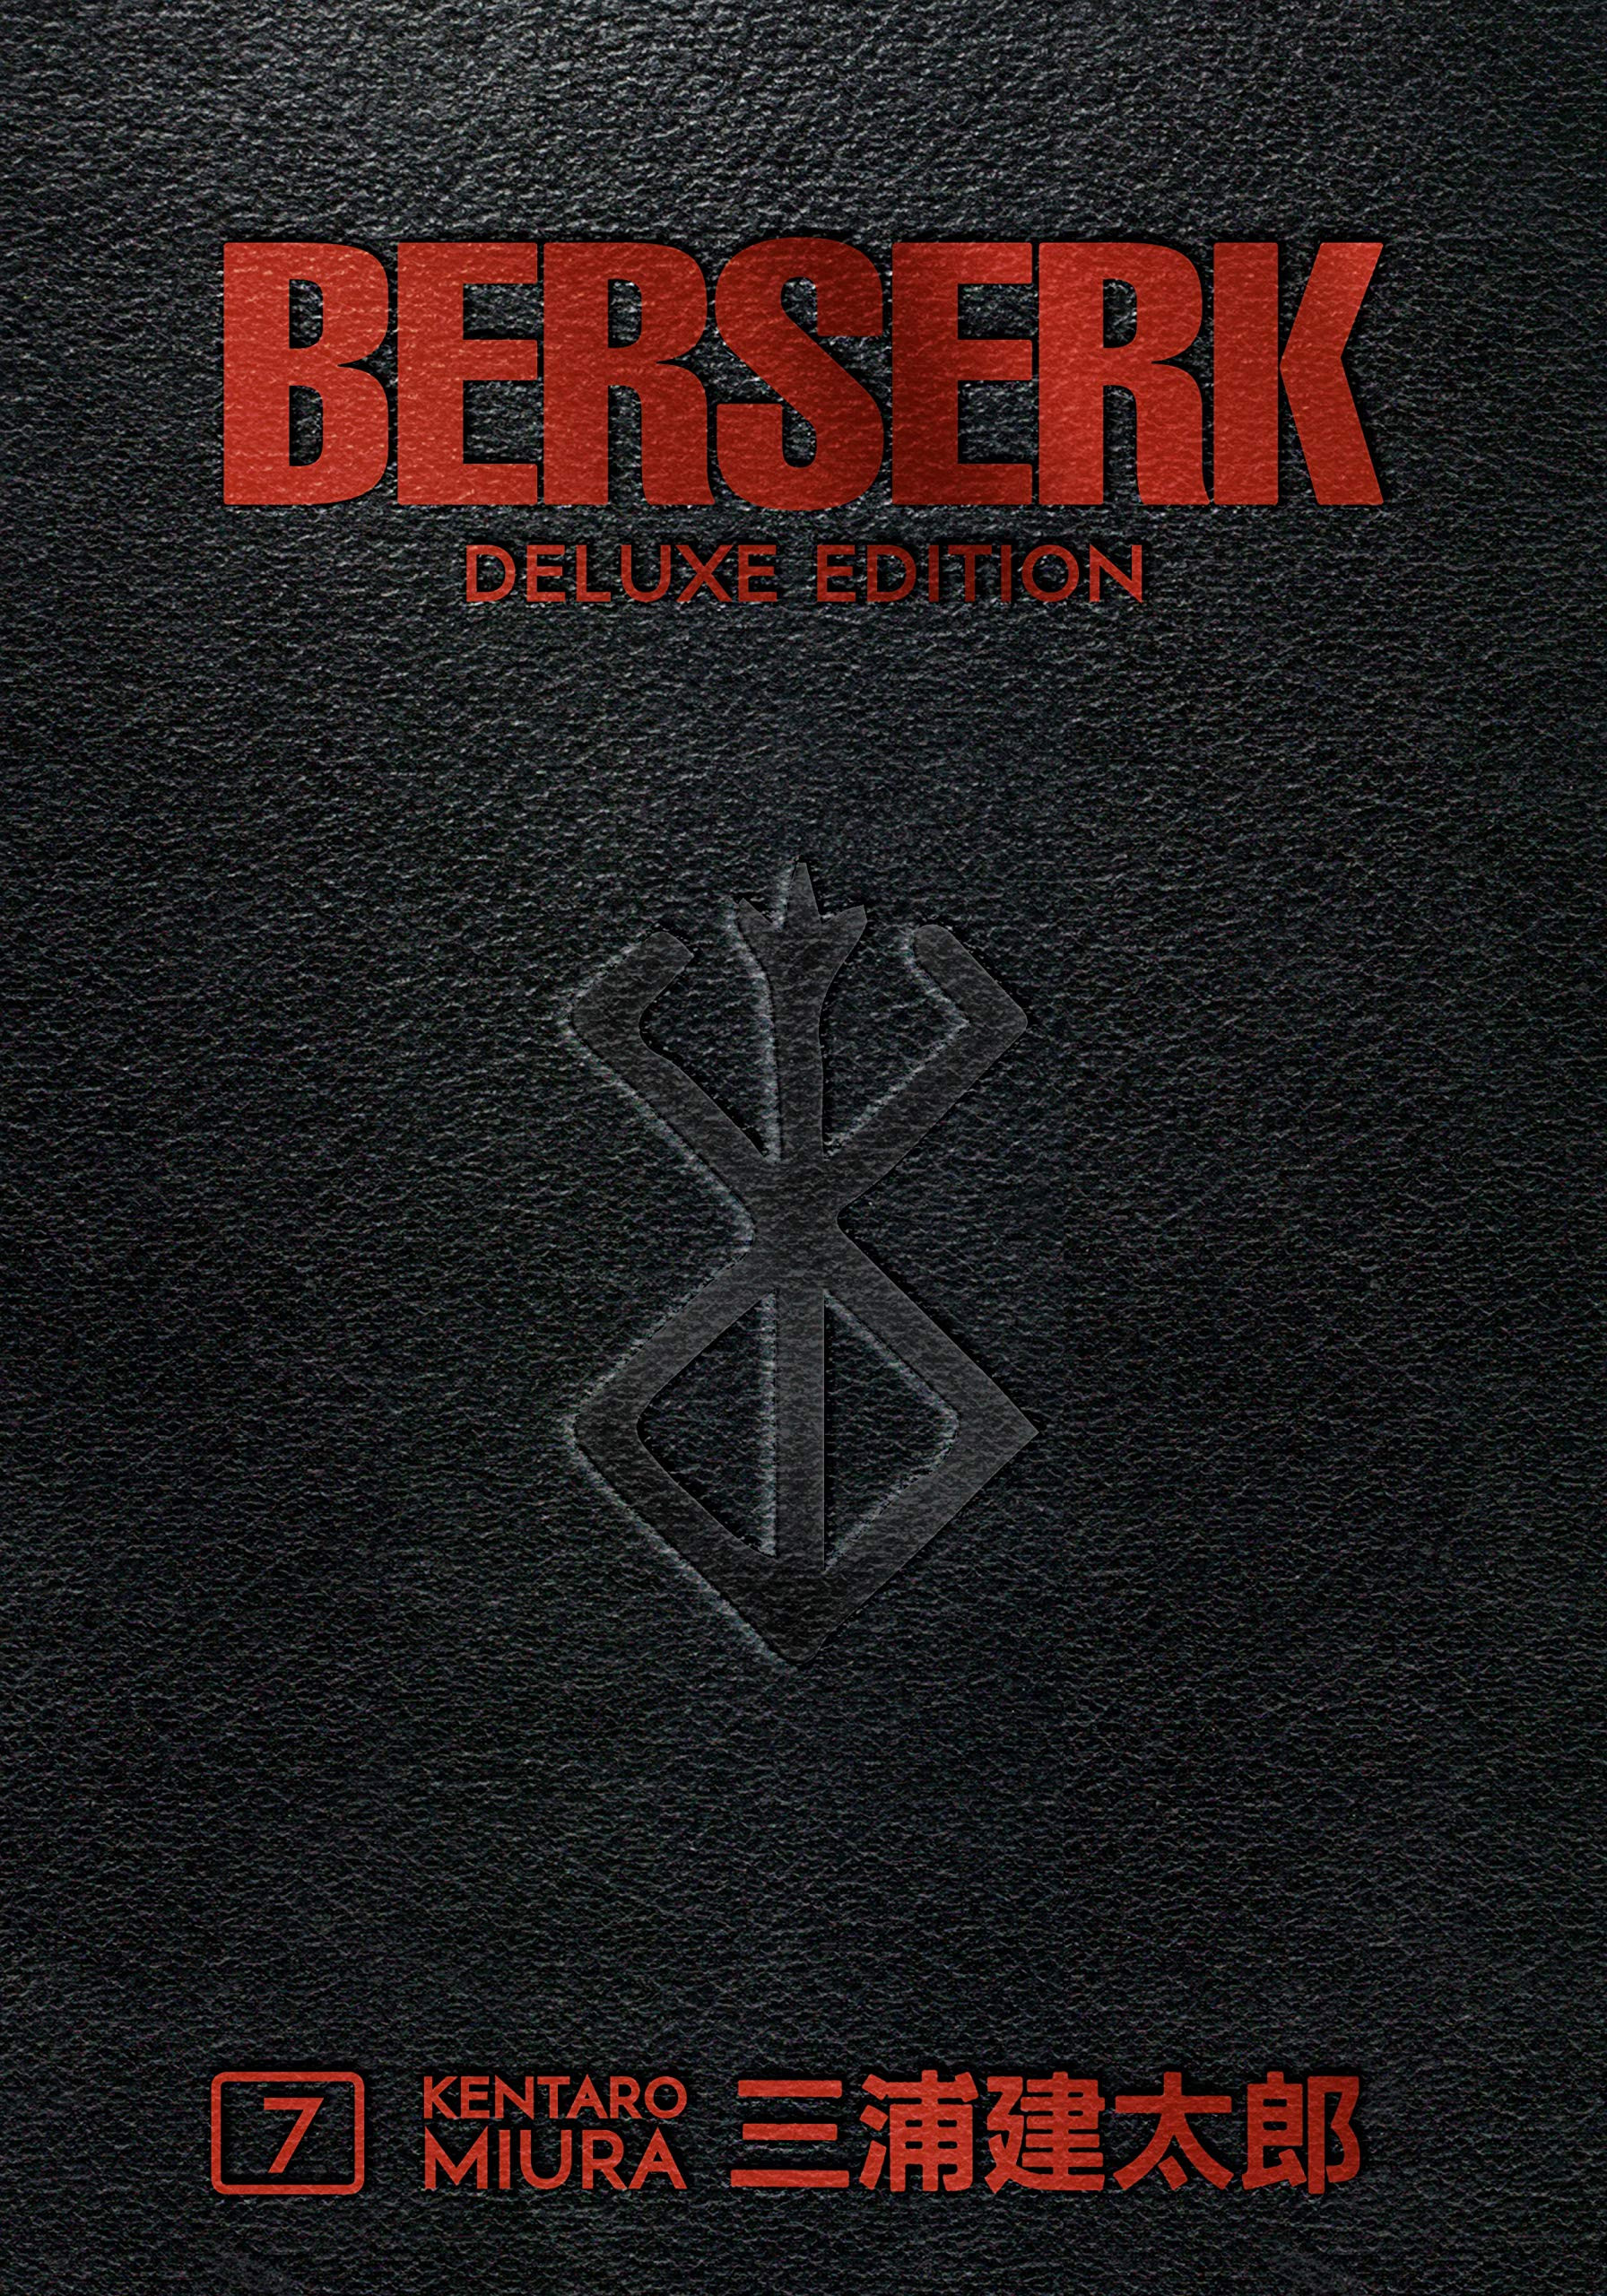 Berserk Deluxe 7